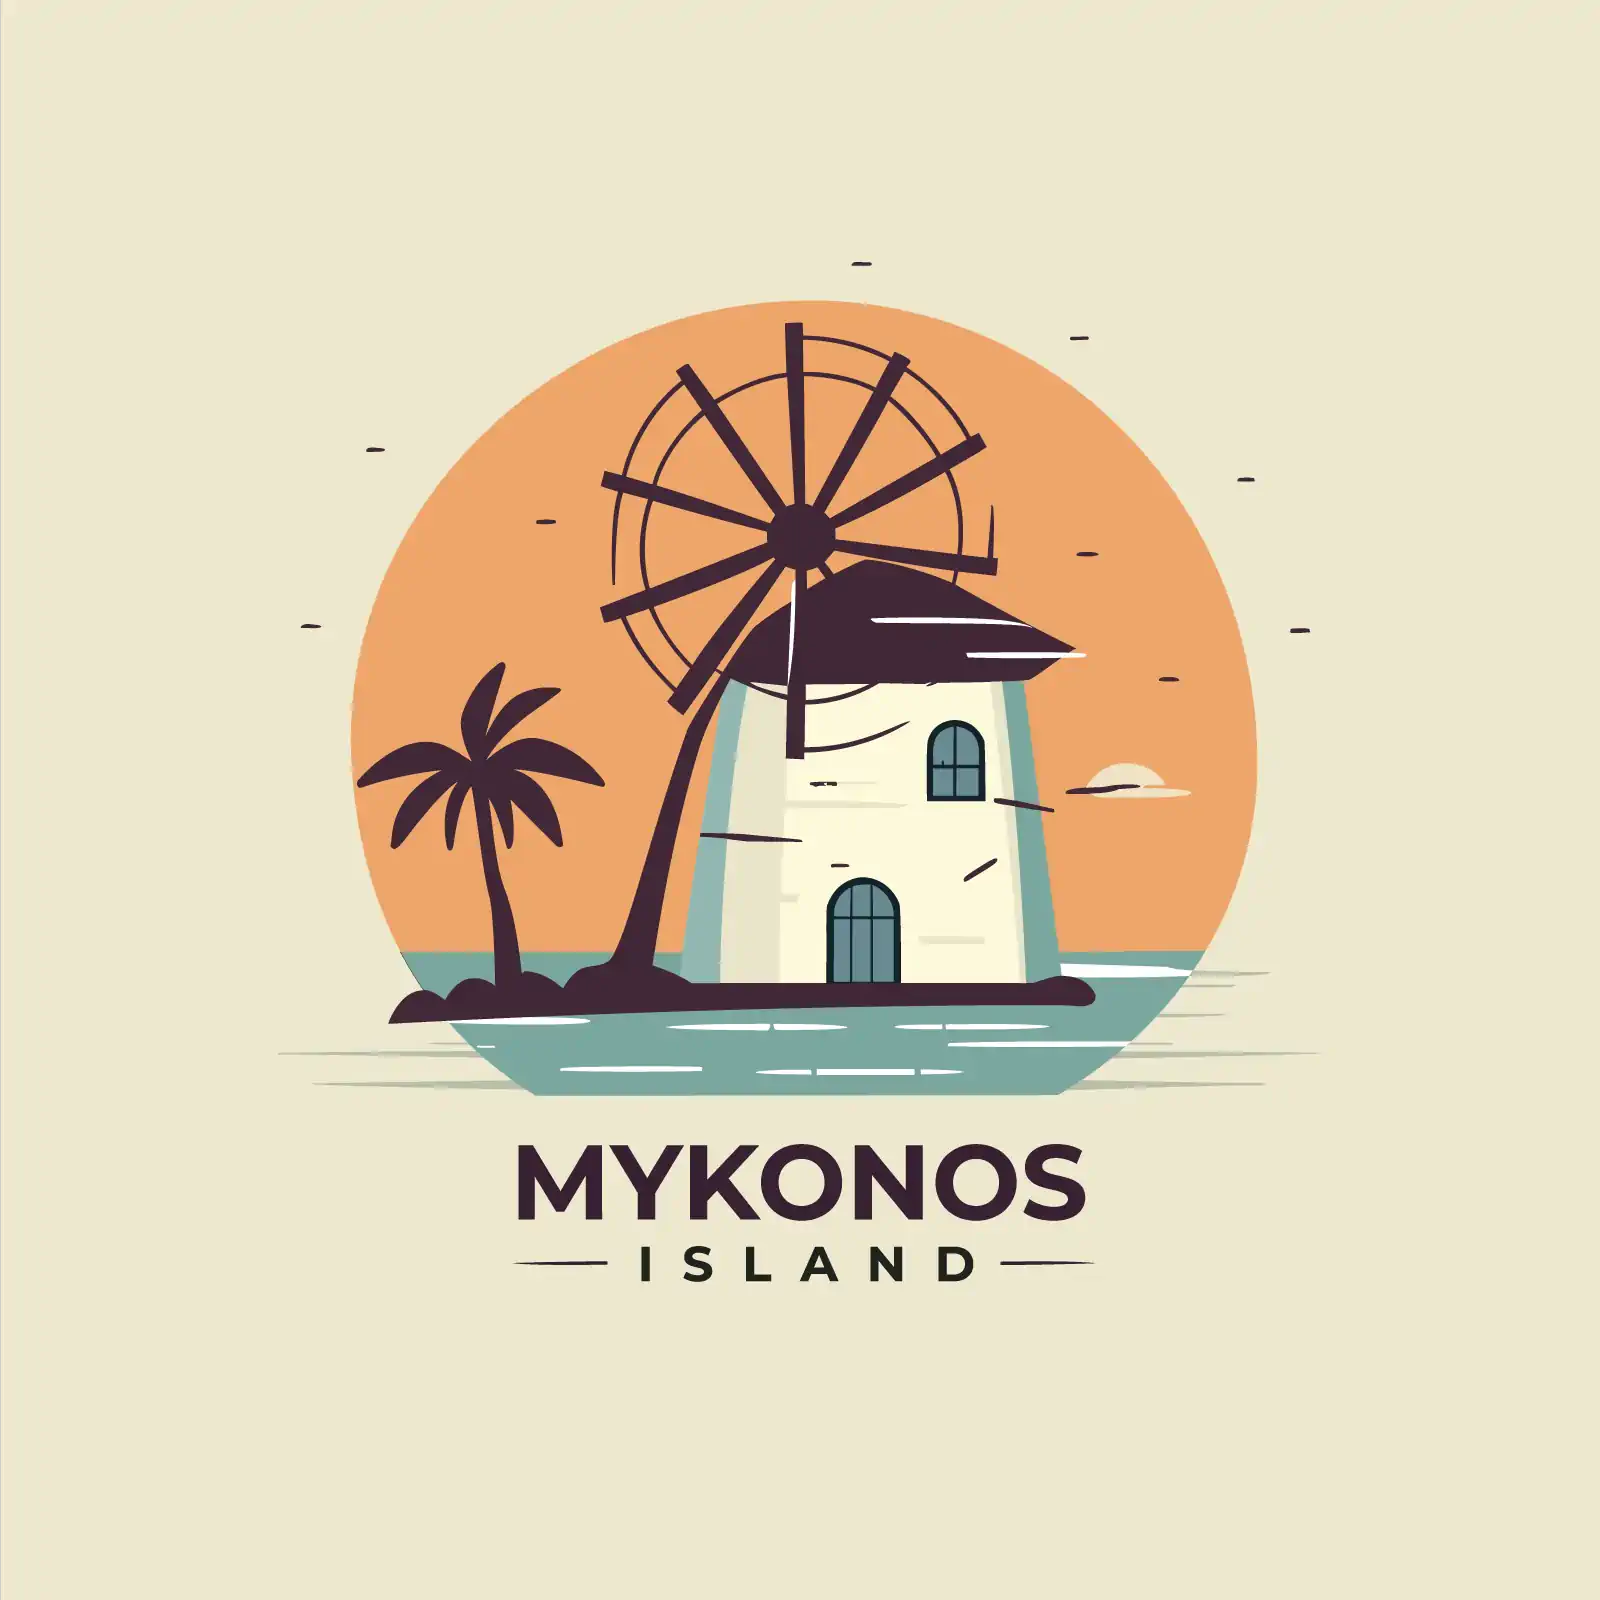 Mykonos essence, cycladic elegance in logo design